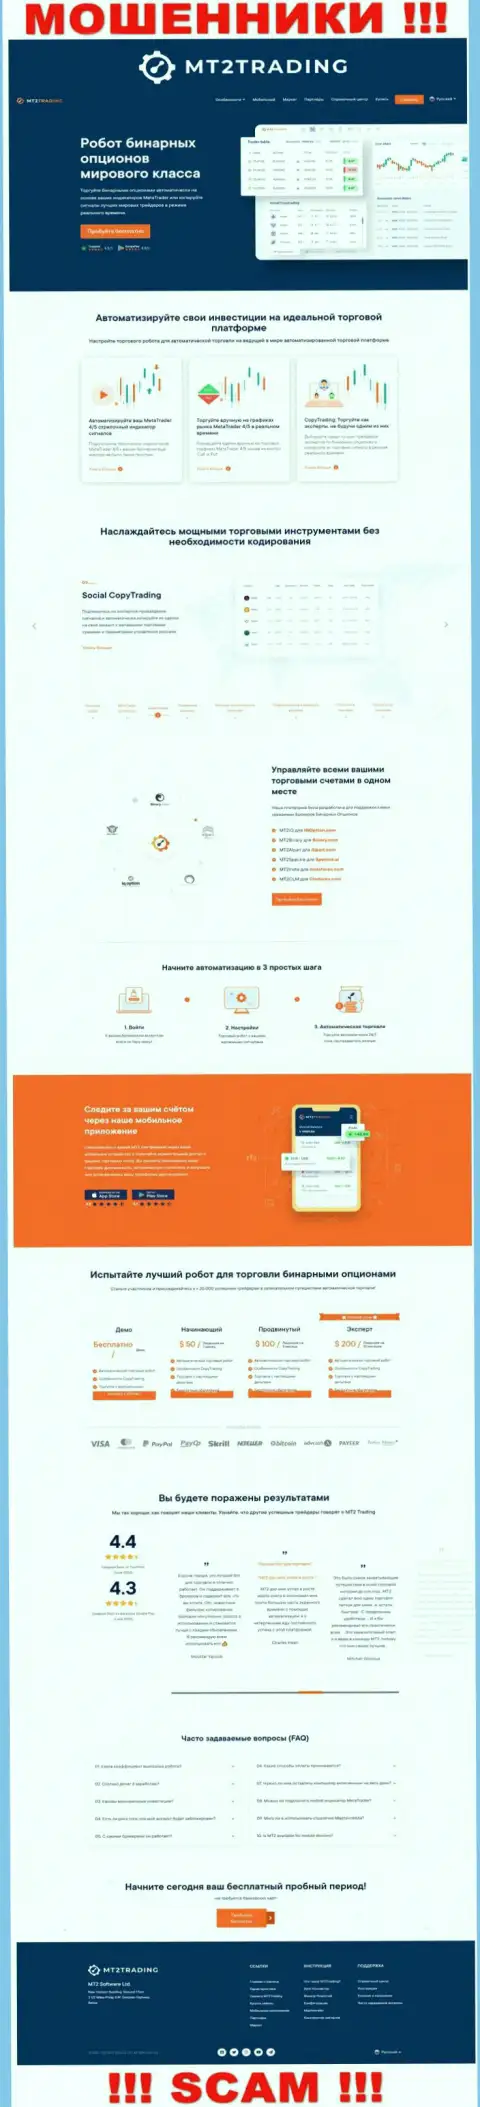 Вид официального web-сервиса противозаконно действующей организации MT2 Software Ltd